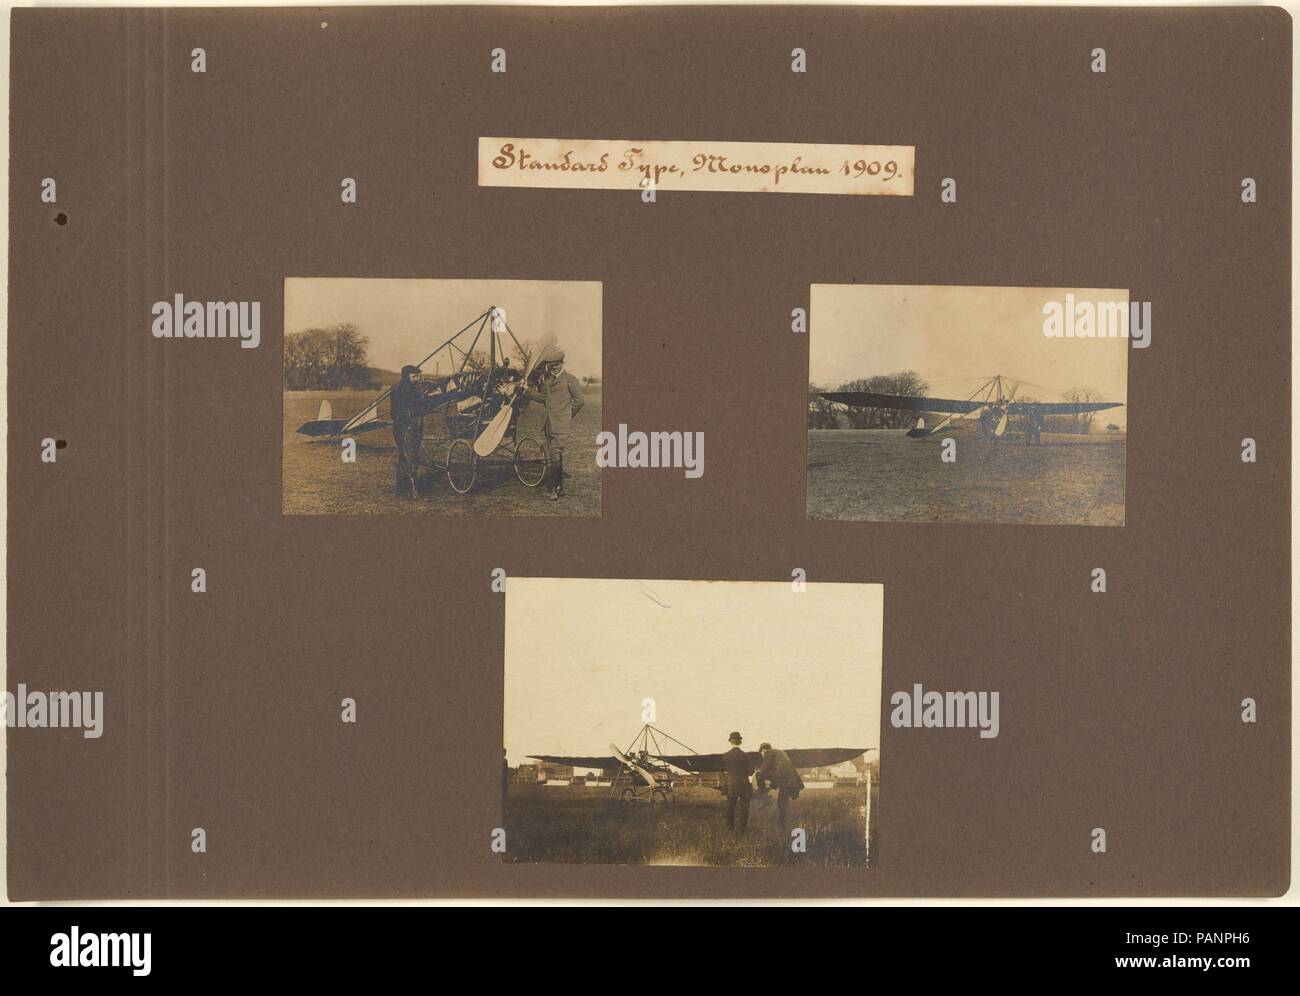 Il tipo standard, monoplan 1909. Artista: Giacobbe Christian Hansen Ellehammer (danese, 1871-1946); Vilhelm Ellehammer (danese). Dimensioni: immagine (u.l.): 2 9/16 x 3 3/8 in. (6,5 × 8,6 cm) immagine (u.r.): 2 9/16 x 3 7/16 in. (6,5 × 8,7 cm) immagine (l.c.): 3 1/8 × 4 1/16 in. (7,9 × 10,3 cm) foglio: 9 5/8 × 12 13/16 in. (24,4 × 32,6 cm). Data: 1905-19. Ignaro dei fratelli Wright' successo, l'ingegnere danese Ellehammer lavorato in isolamento per inventare un mezzo di volo, una prodezza ha raggiunto il 12 settembre 1906. Presto ha spostato la sua attenzione al volo verticale craft, riuscendo nel 1912 salto in lungo Foto Stock